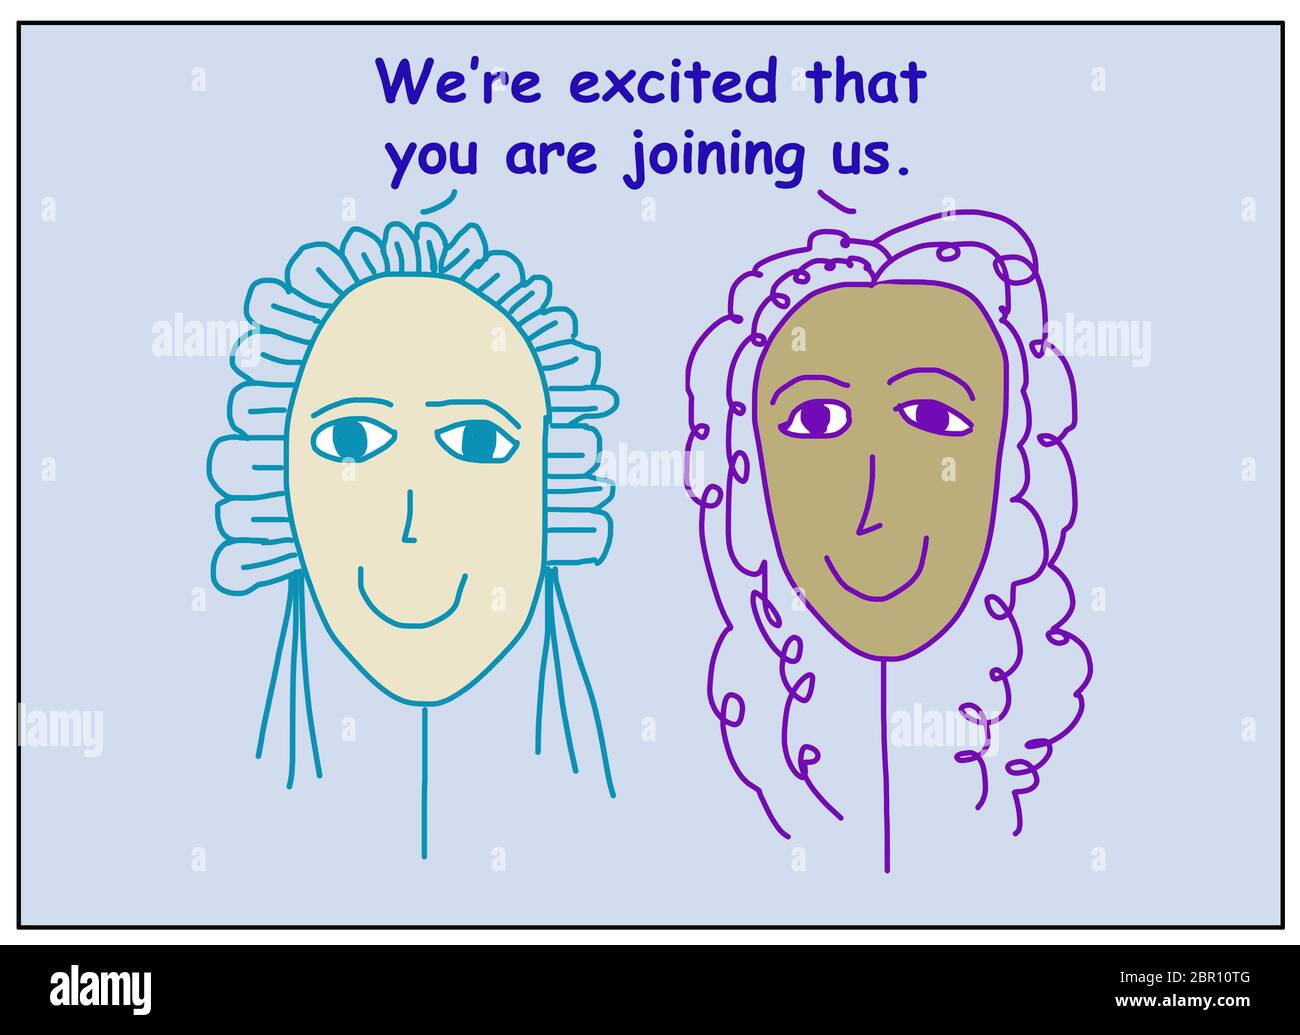 Color Cartoon von zwei lächelnden und ethnisch unterschiedlichen Frauen sagen, wir sind begeistert, dass Sie uns beitreten. Stockfoto